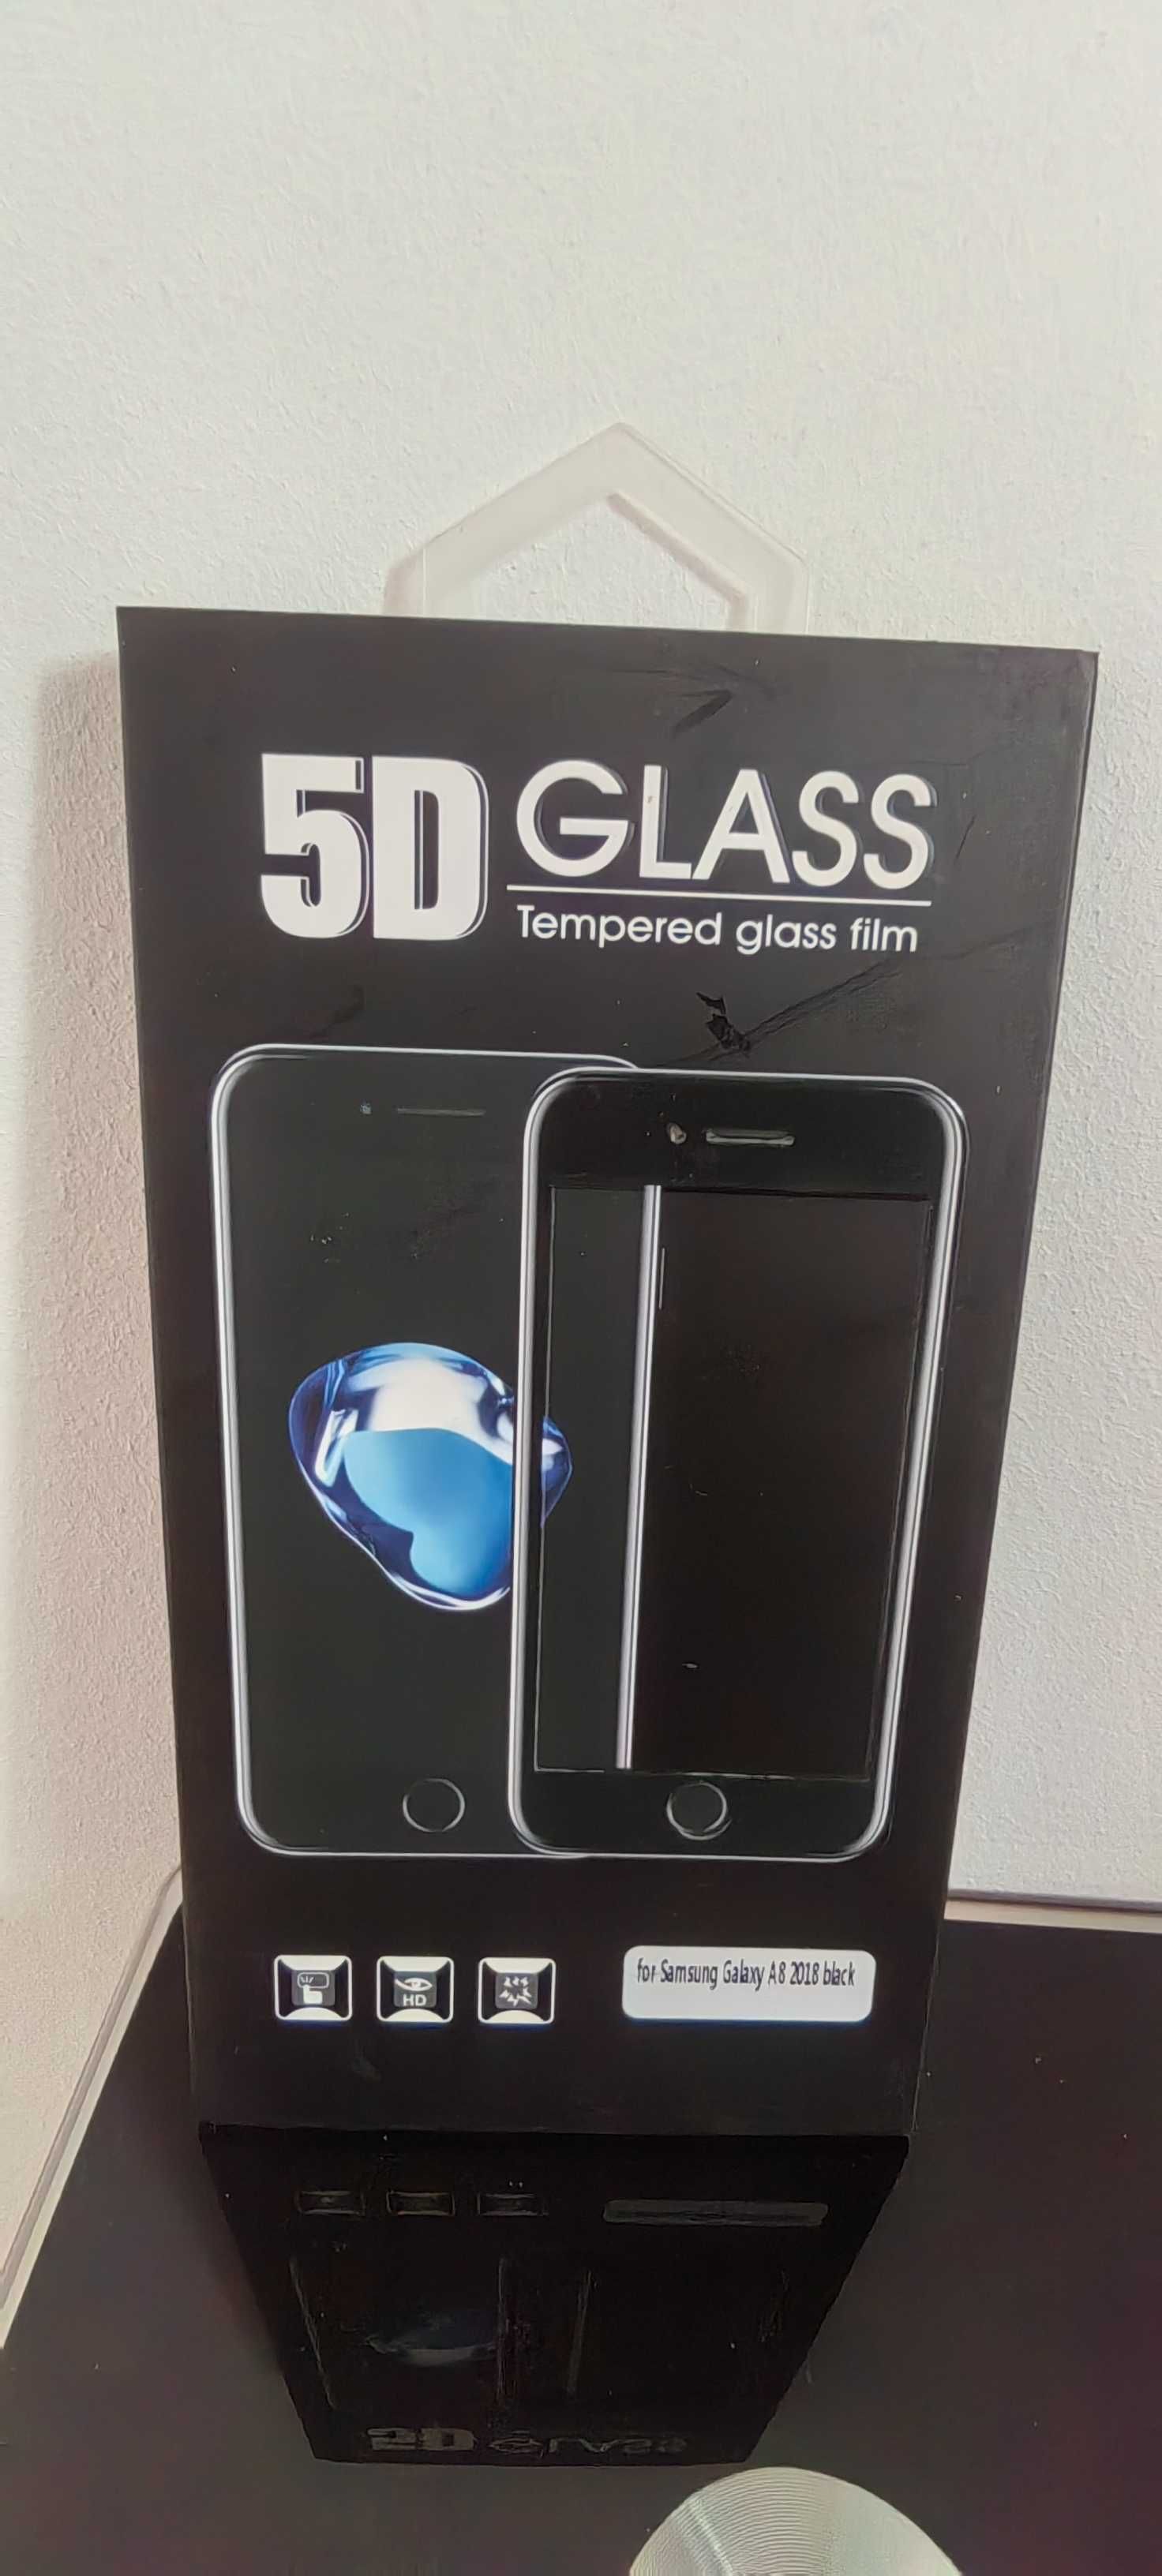 Vând huse de Samsung, iPhone și folie sticla ipad